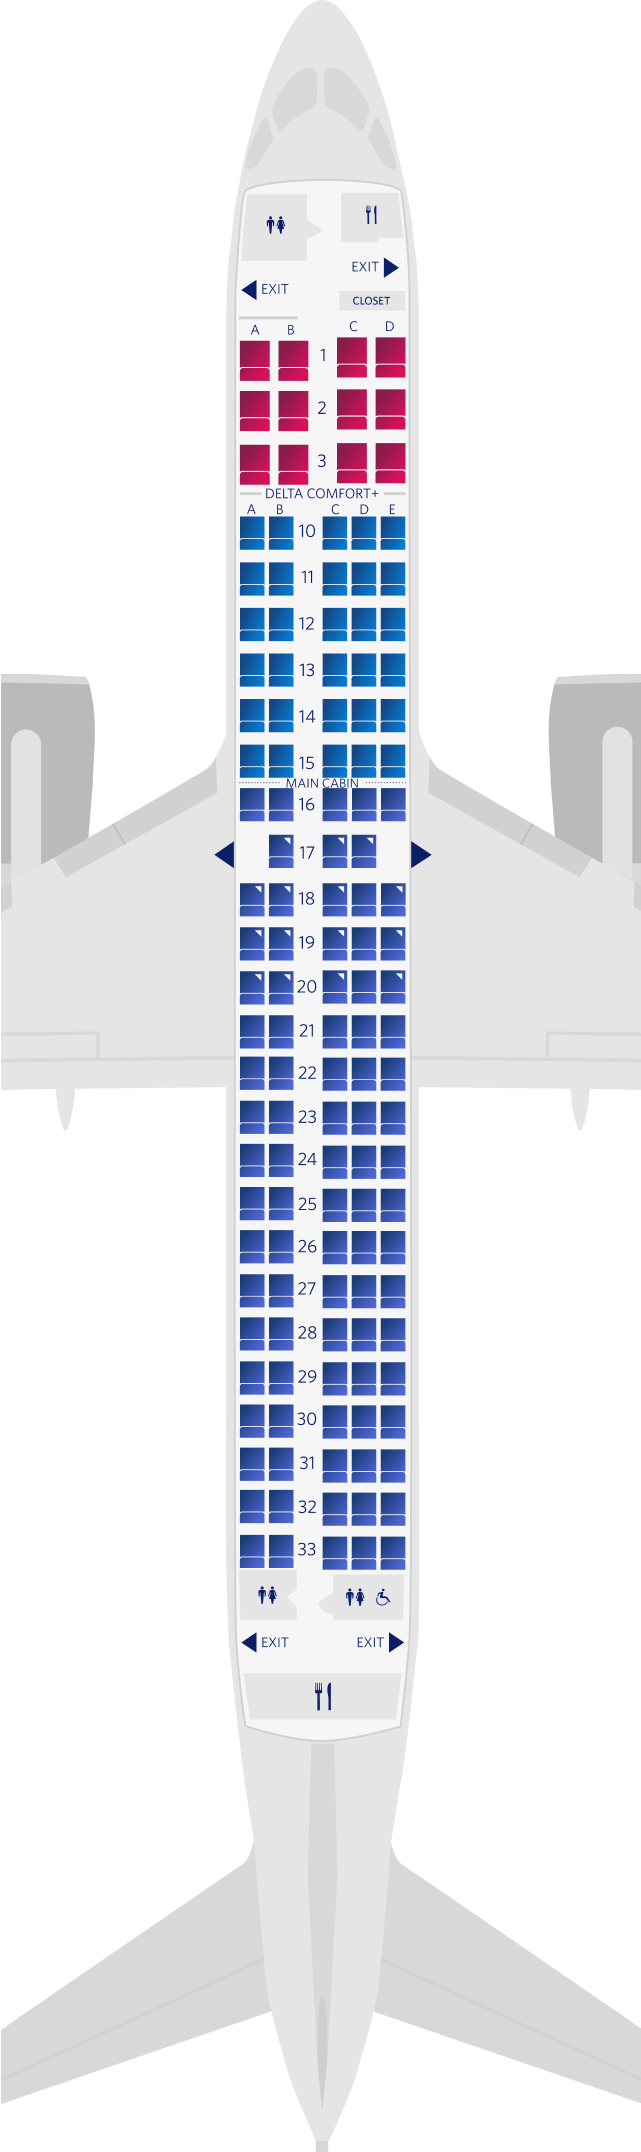 空客A220-300座位图